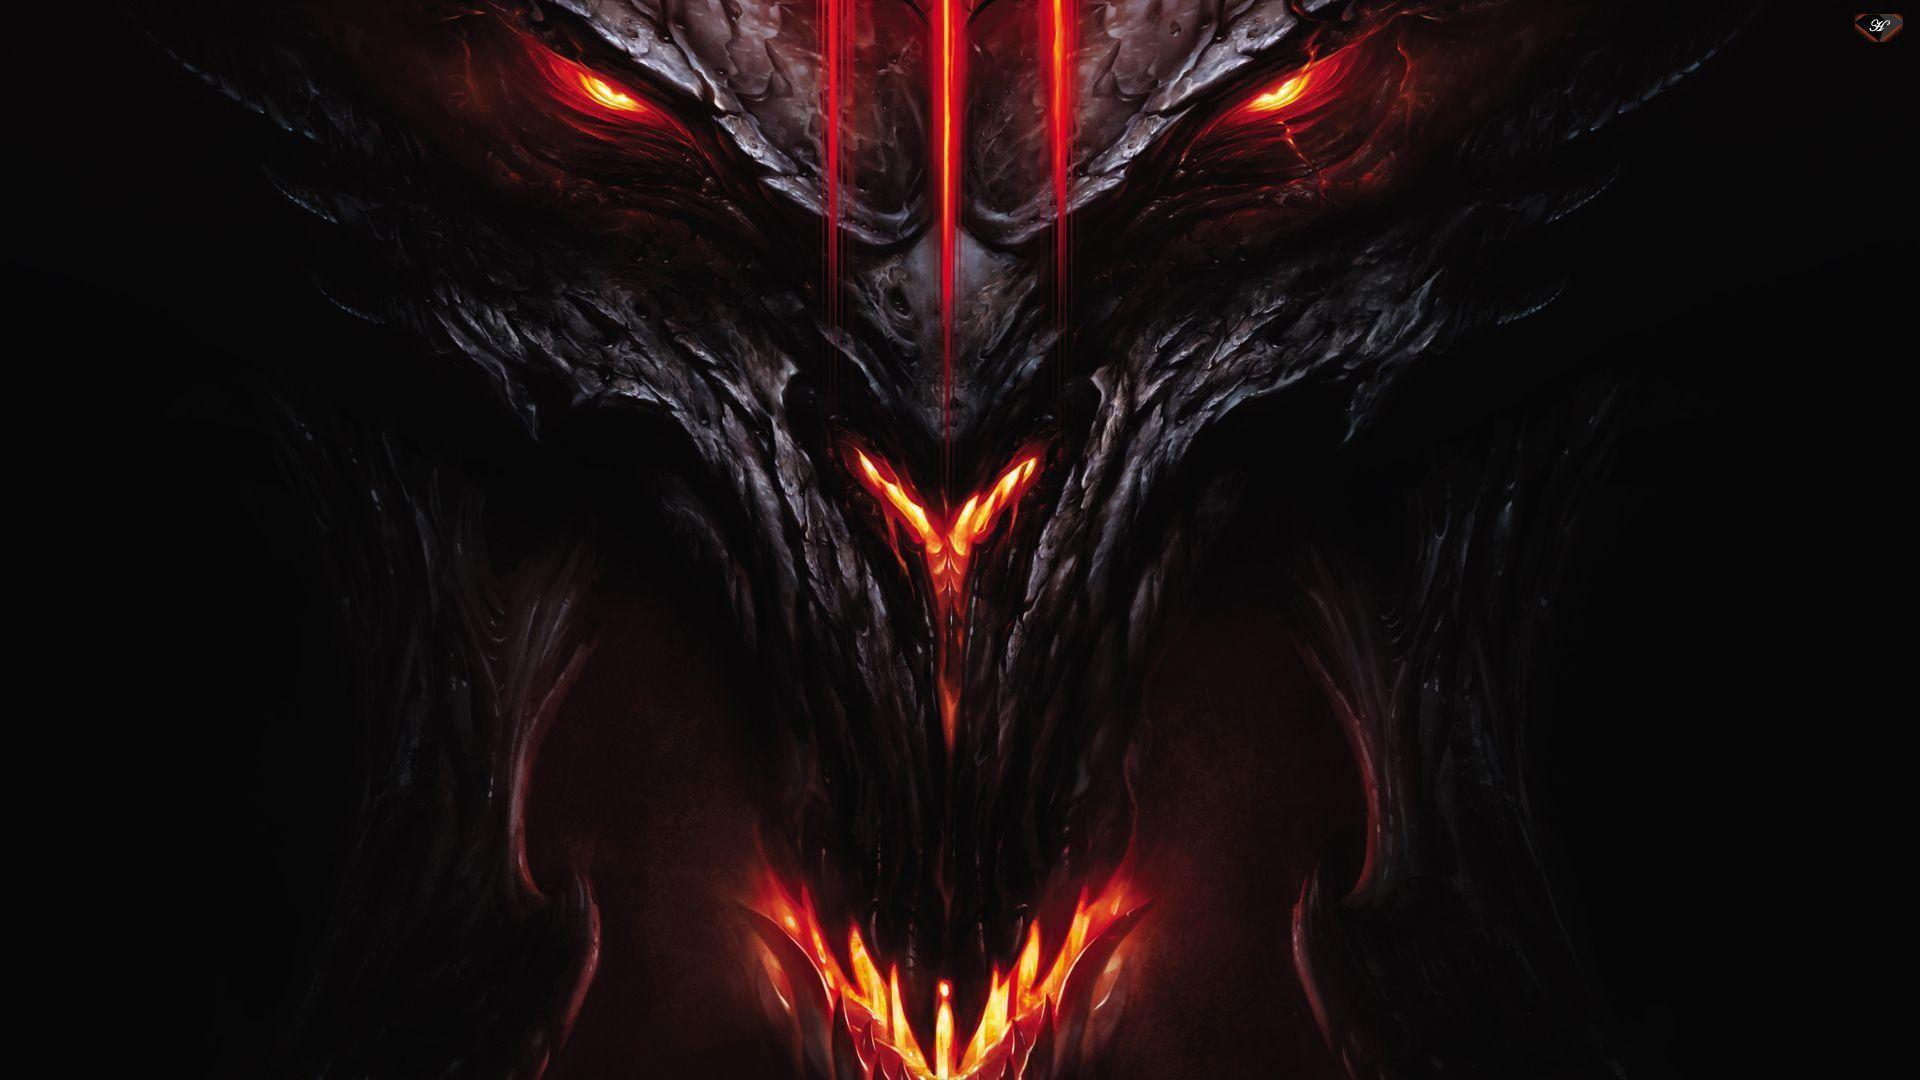 Diablo 3 Wallpapers HD Free Download  PixelsTalkNet